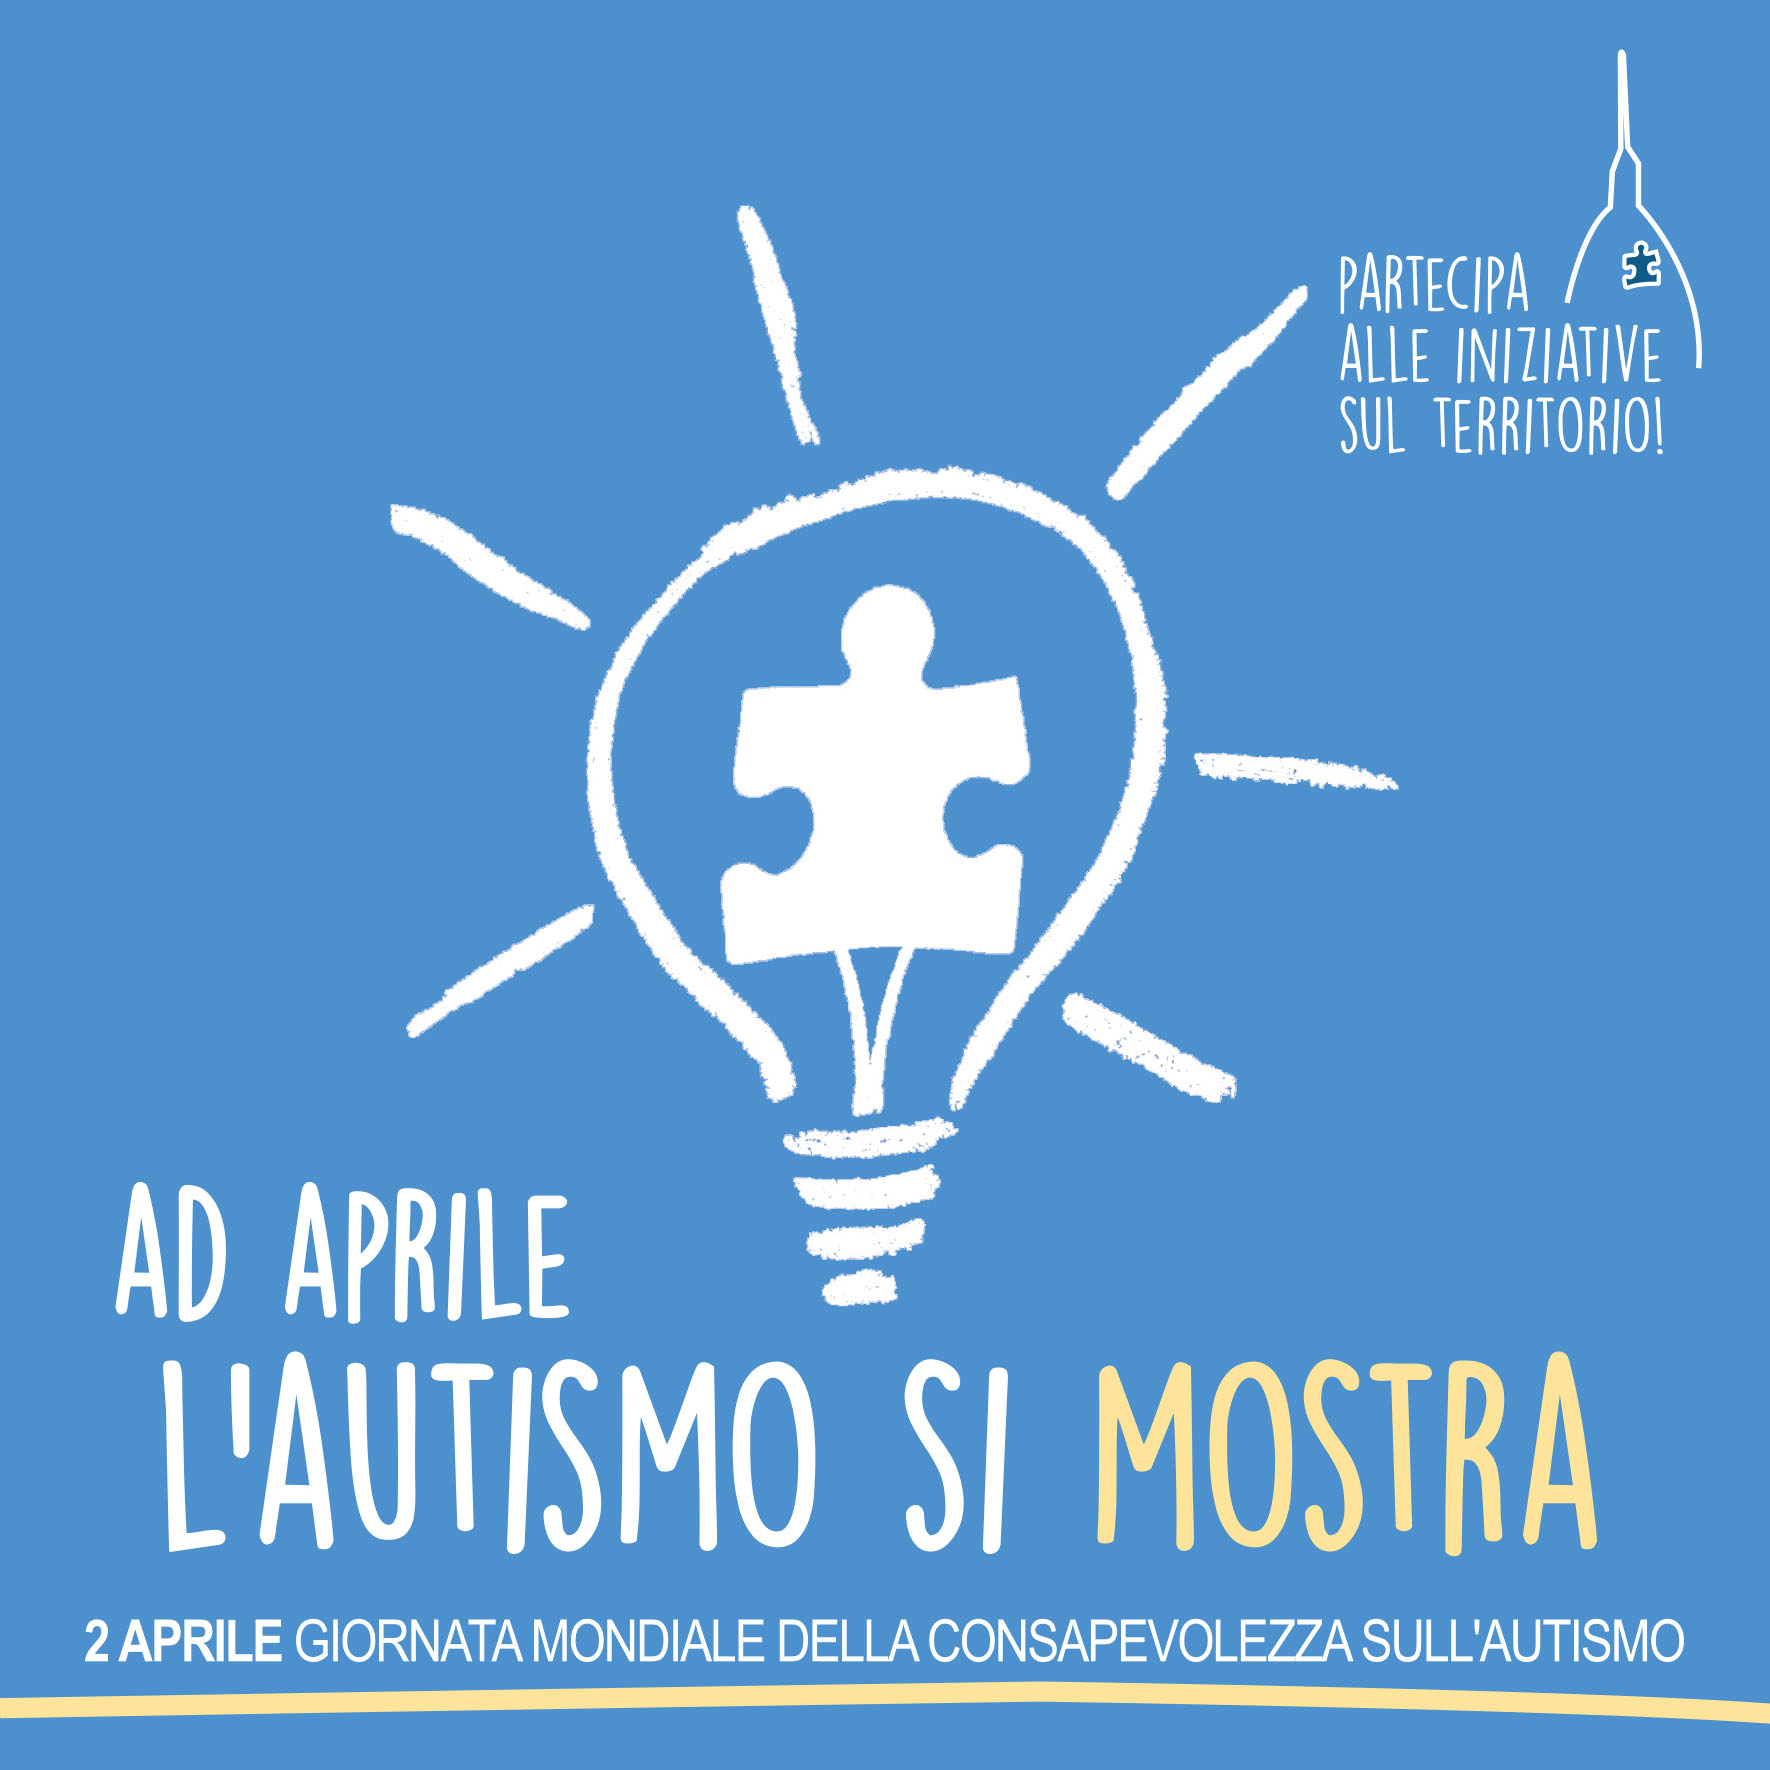 2 Aprile, Giornata Mondiale della Consapevolezza sull’Autismo: il mondo si tinge di blu